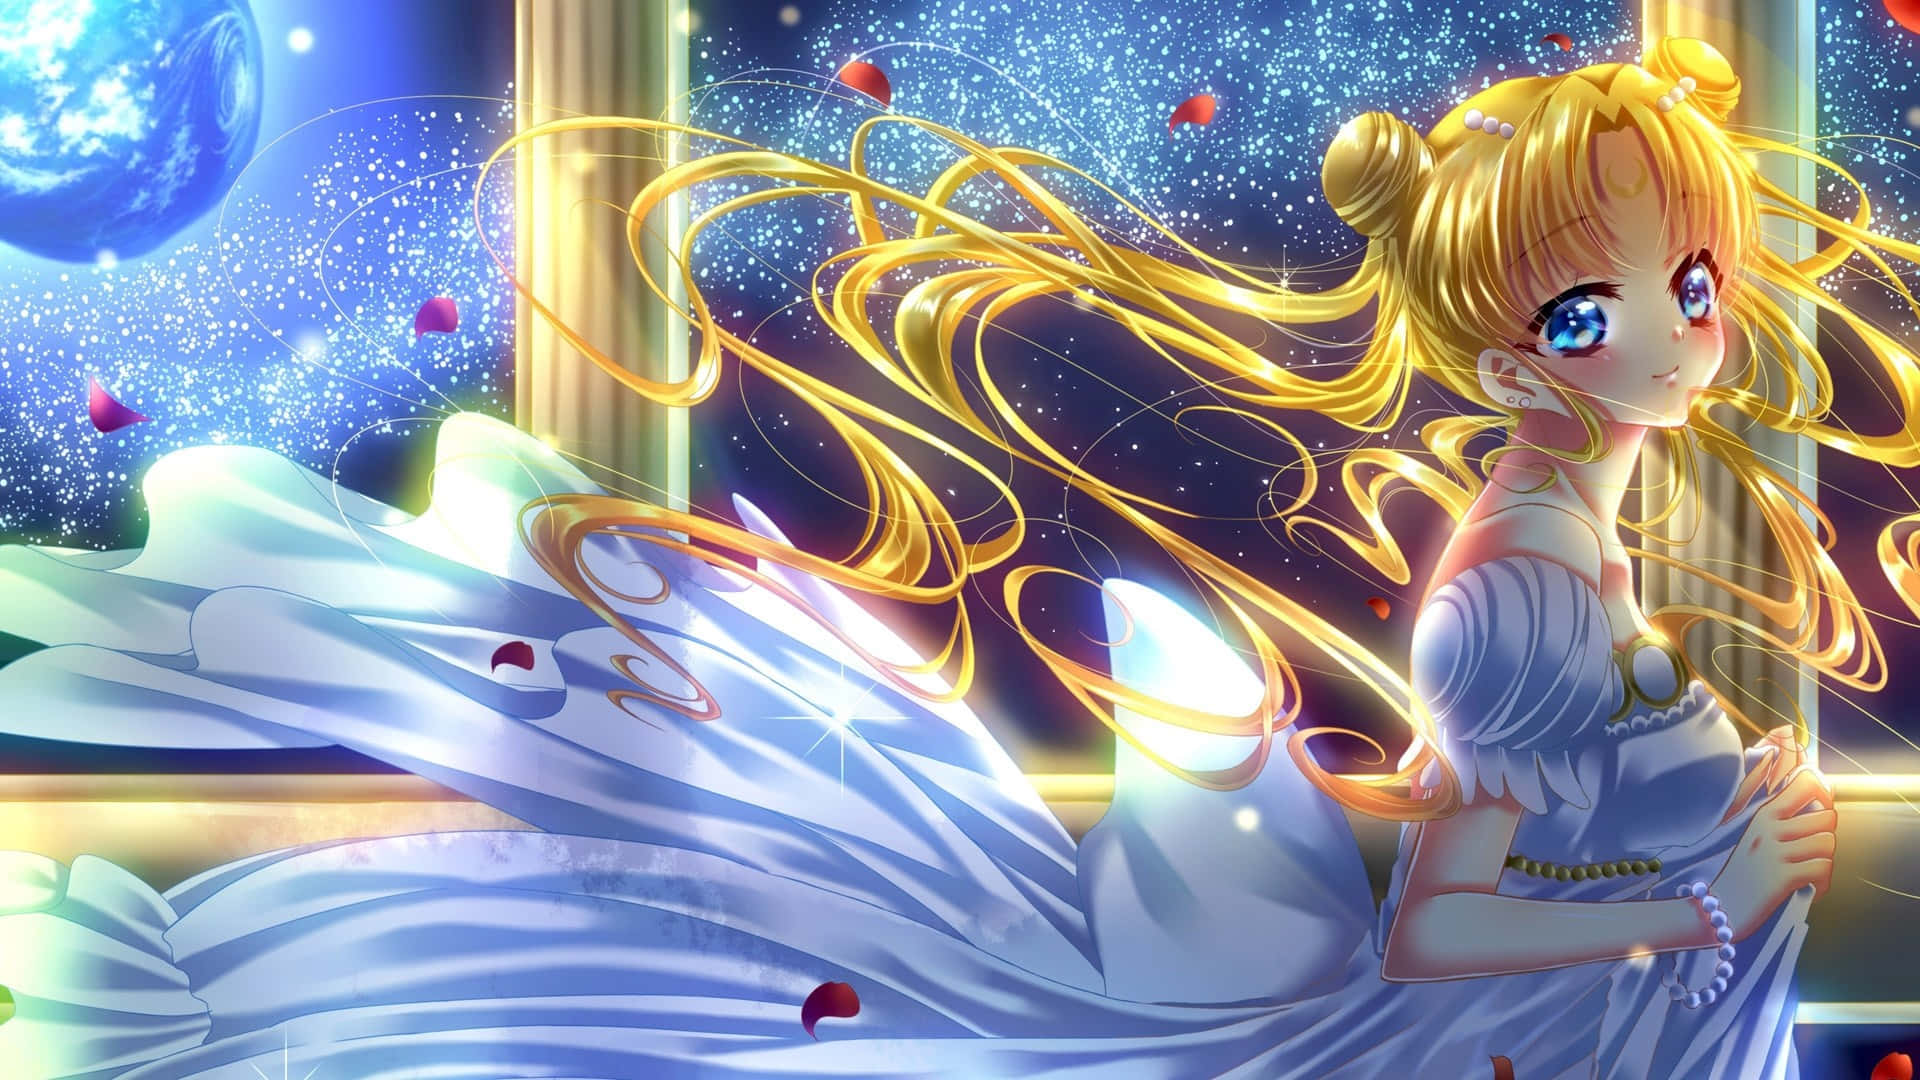 Diesailor-guardians Kämpfen, Um Die Welt In Sailor Moon Zu Beschützen.